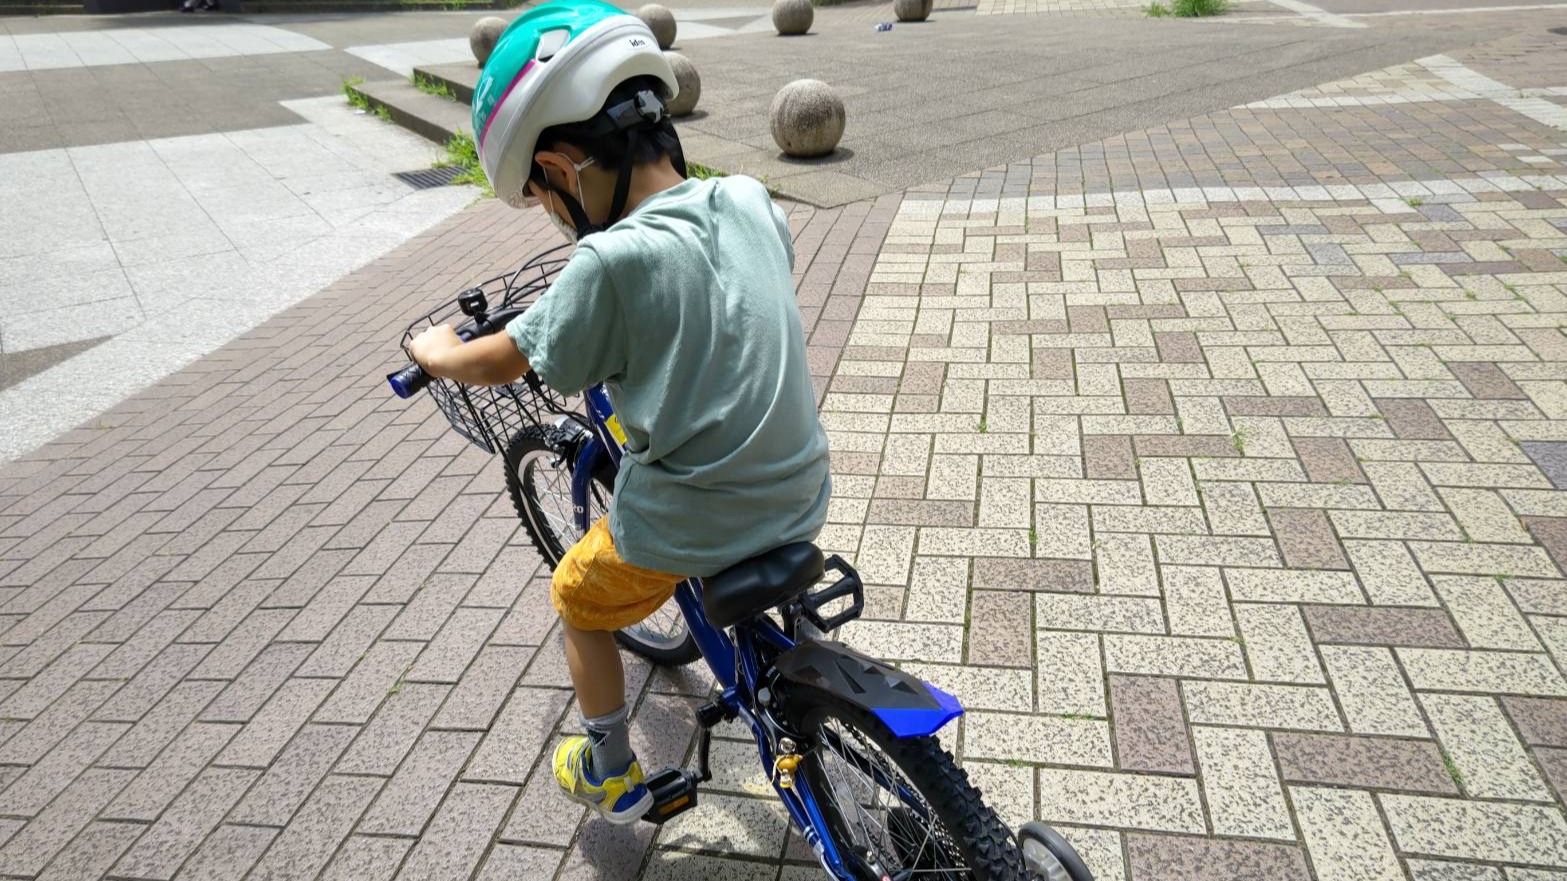 大特価新作子供用自転車、女の子用、20インチ、横浜市内お届け無料 自転車本体